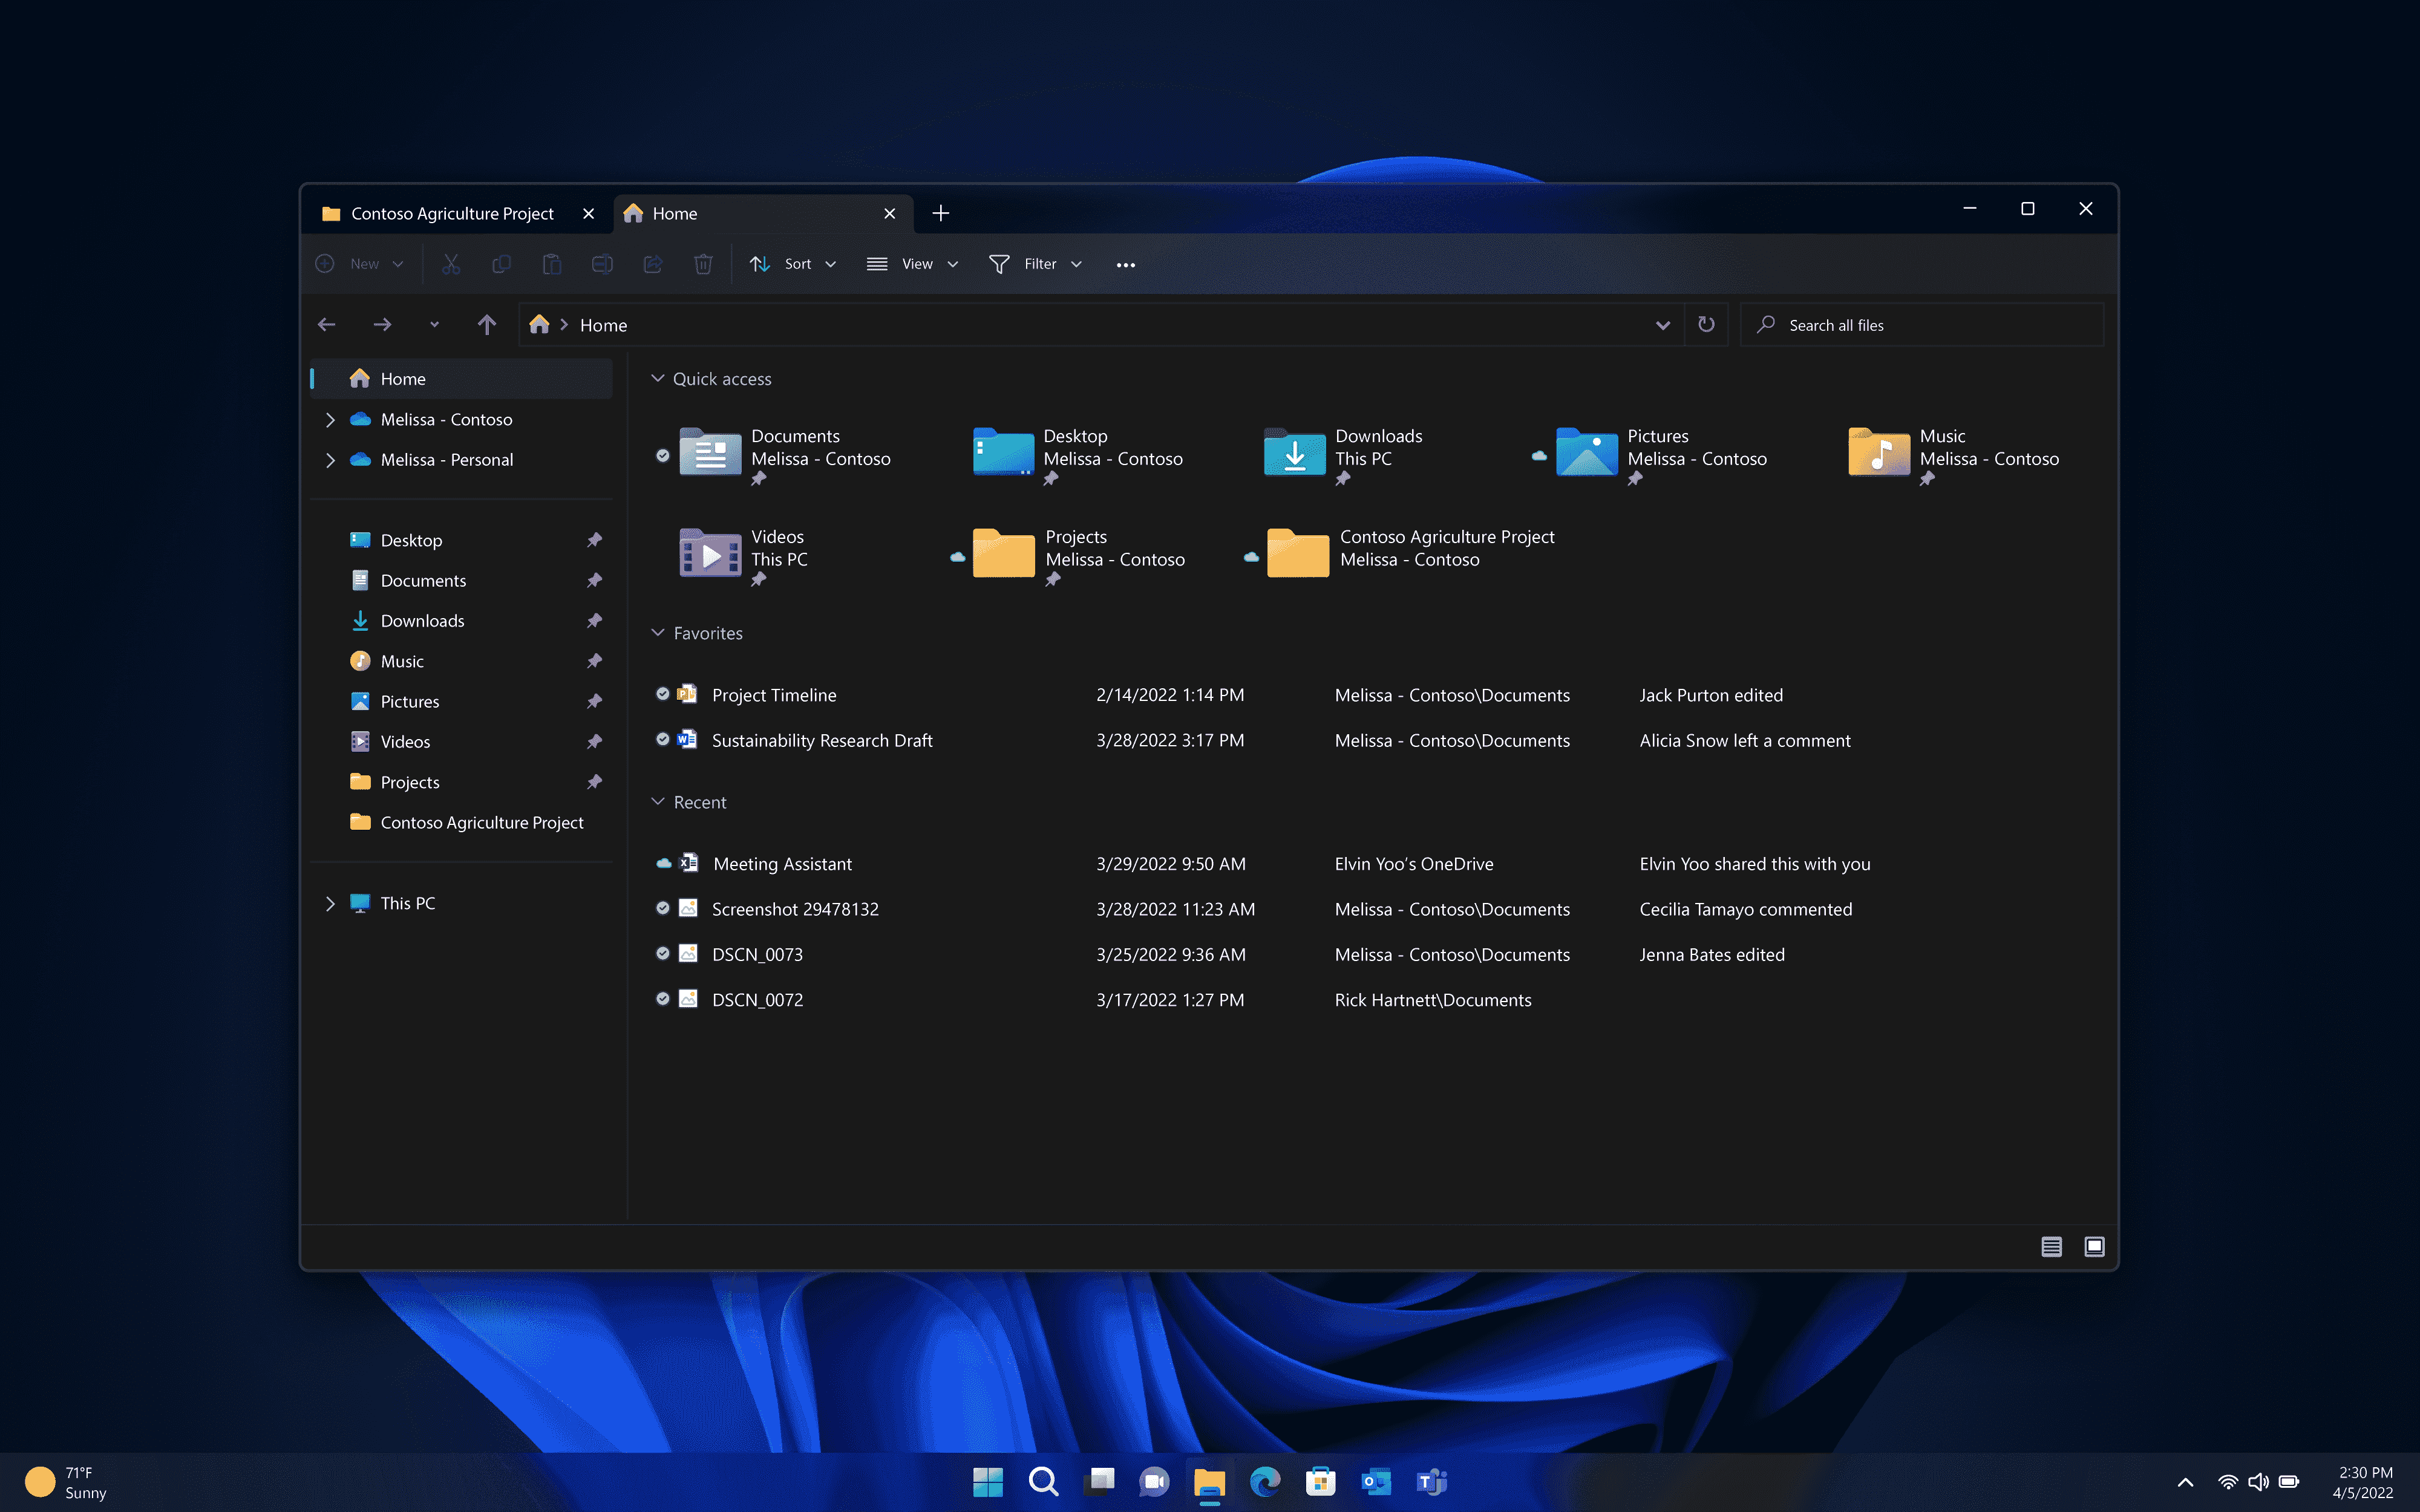 Windows 11 22H2 Güncellemesi